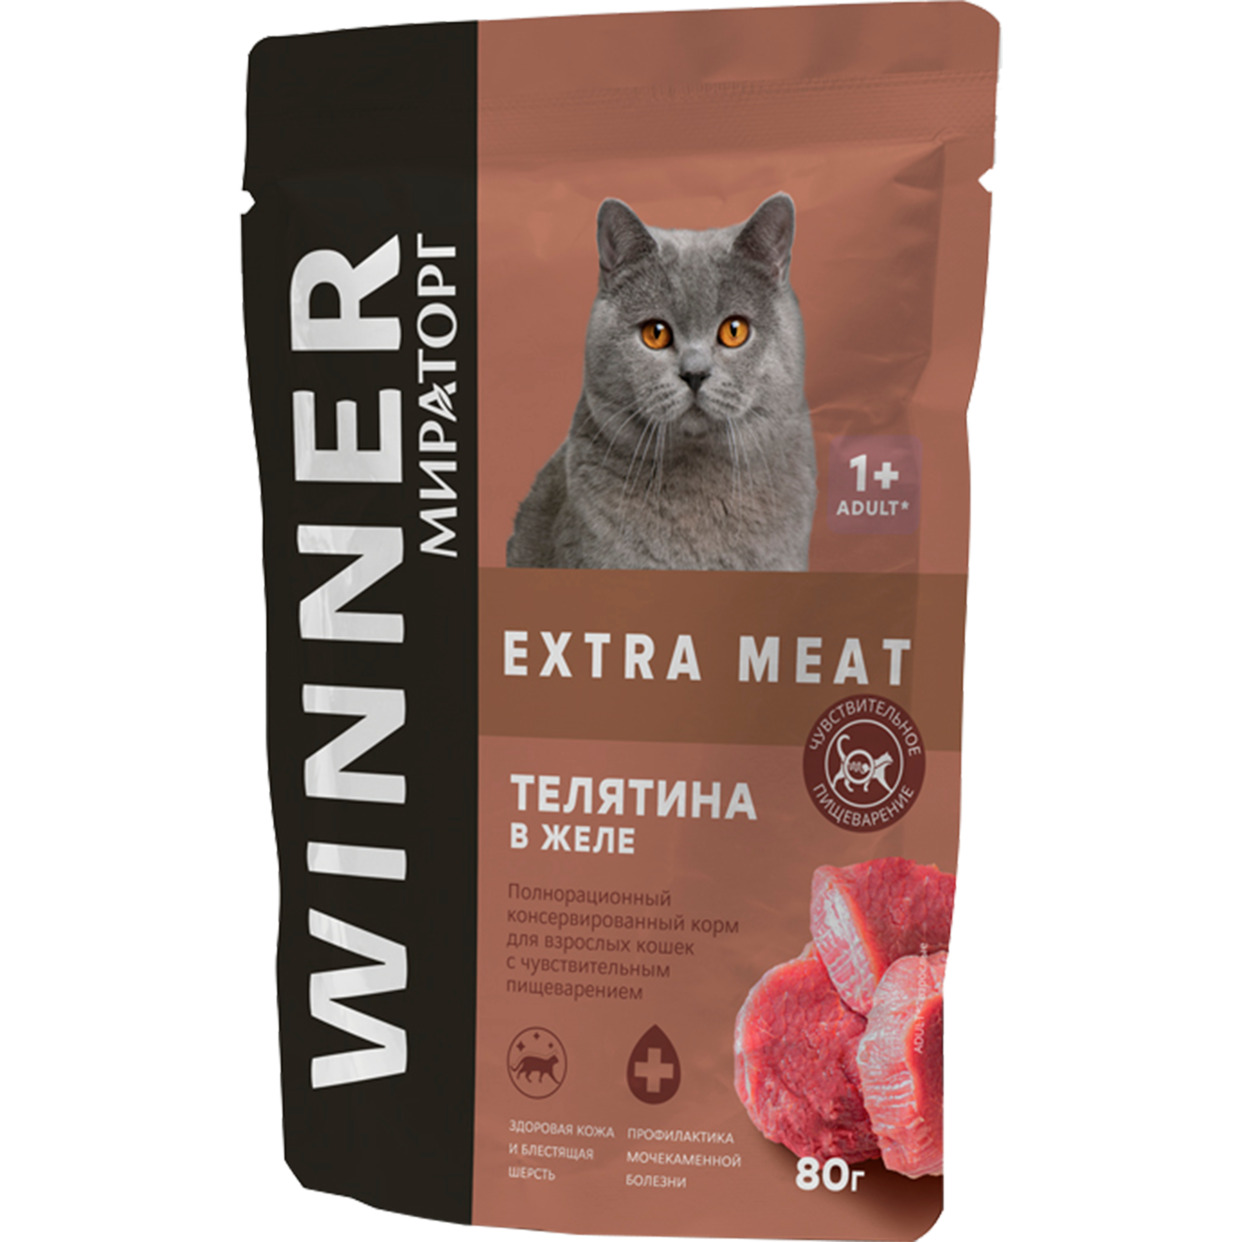 Корм консервированный для взр кошек с чувств пищев "Телятина в желе" 80г WINNER EXTRA MEAT по акции в Пятерочке